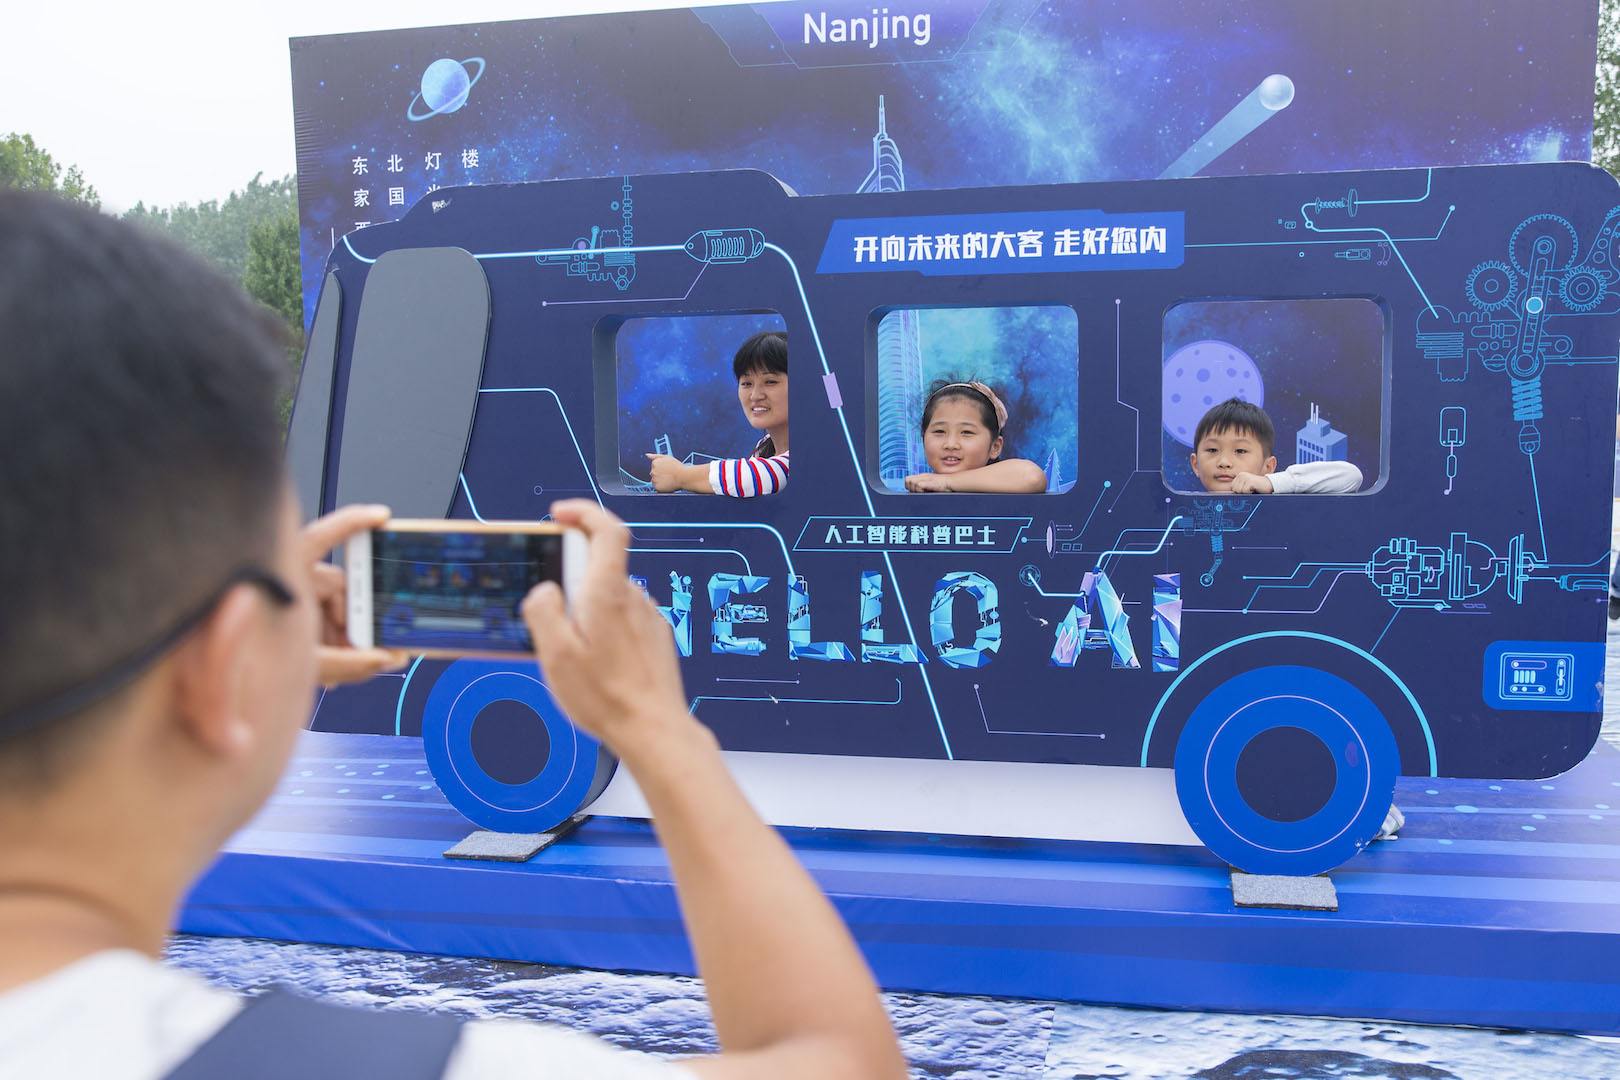 "Hello AI !", "Salut l'intelligence artificielle !" Des visiteurs chinois expérimentent l'intelligence artificielle dans le Baidu AI Bus lors d'une exposition de vulgarisation scientifique organisée par le géant chinois des moteurs de recherche à Nankin, dans la province chinoise du Jiangsu, le 8 septembre 2017. (Crédits : CHENG JIABEI / IMAGINECHINA / via AFP)